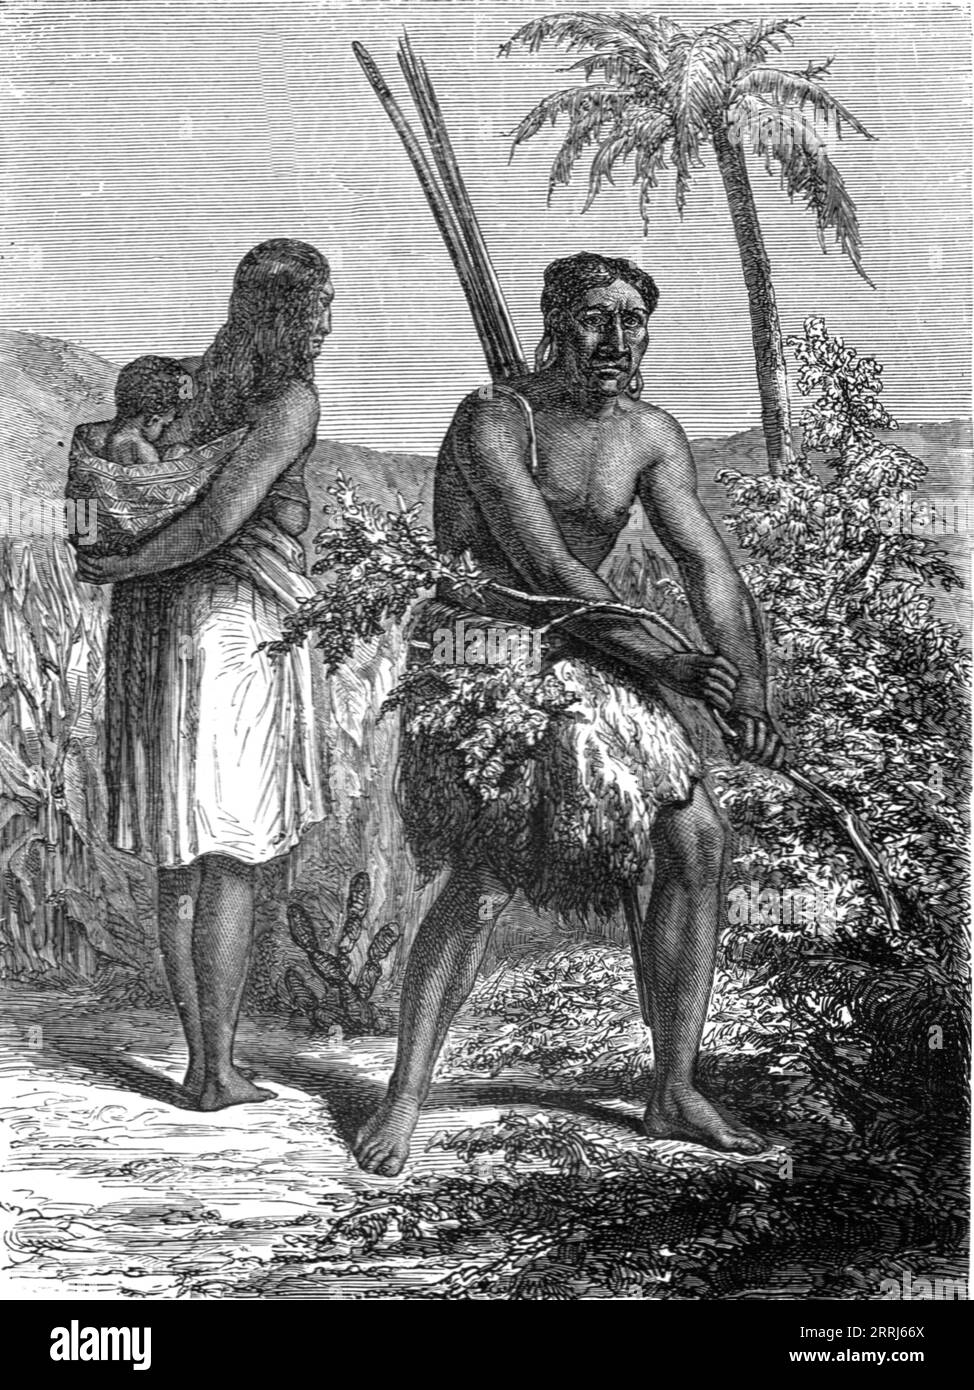 'Indios del Gran Chaco; Una visita a Paraguay durante la guerra', 1875. De, 'Viajes ilustrados' por H.W. Bates. [Cassell, Petter, y Galpin, c1880, Londres] Foto de stock